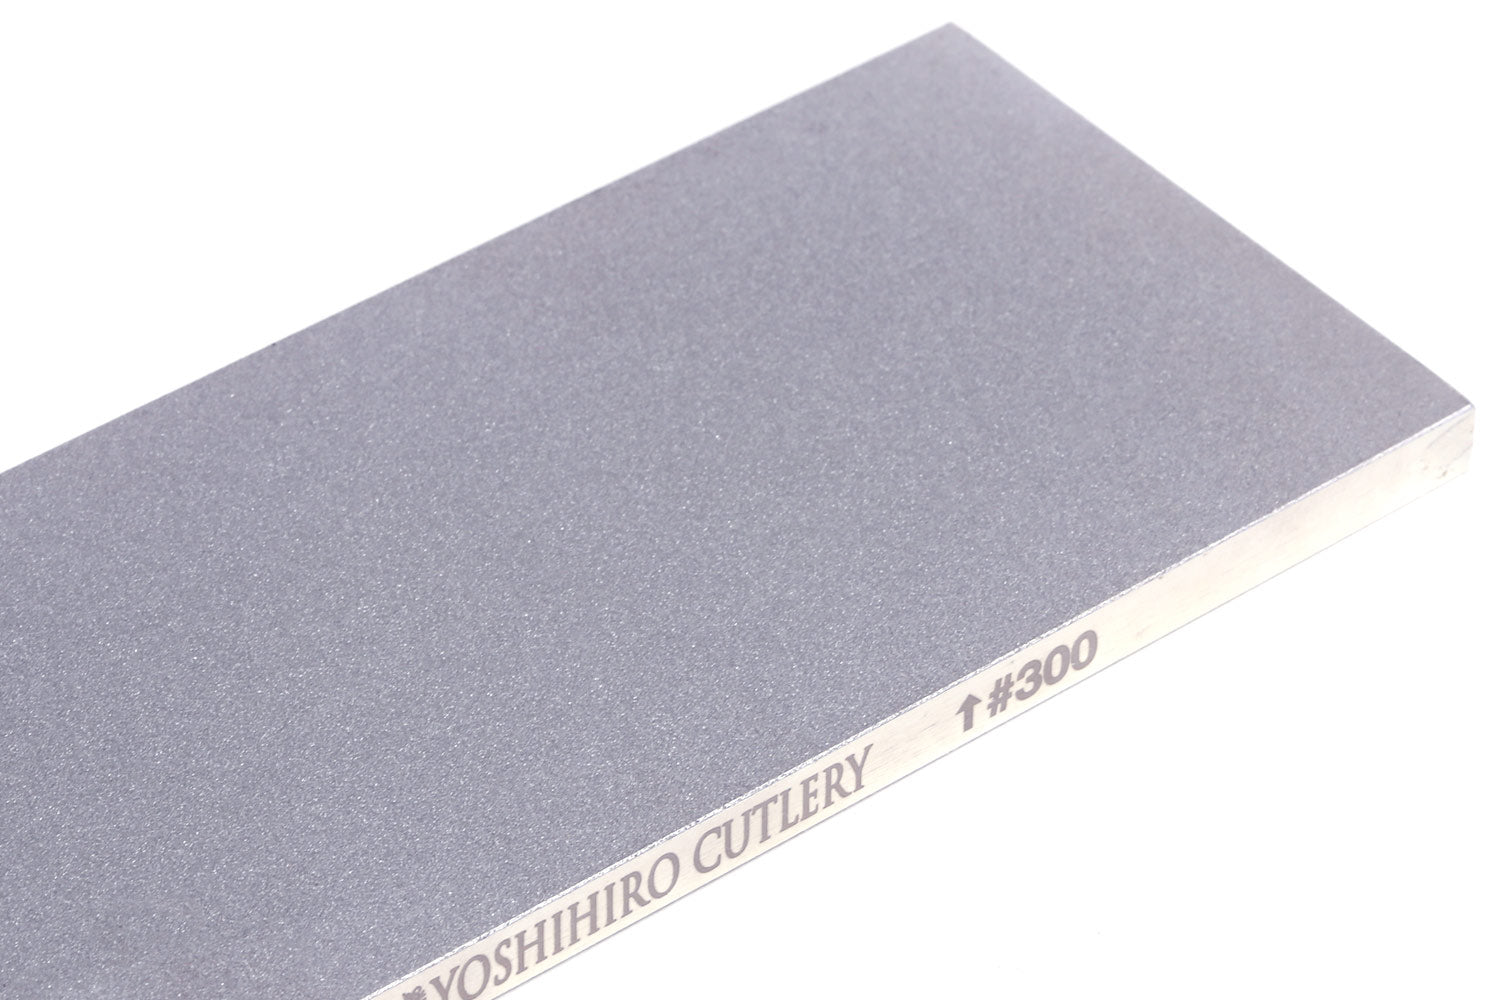 Yoshihiro Premium Double-Sided Diamond Sharpening Plate/Stone Fixer (3 –  Yoshihiro Cutlery